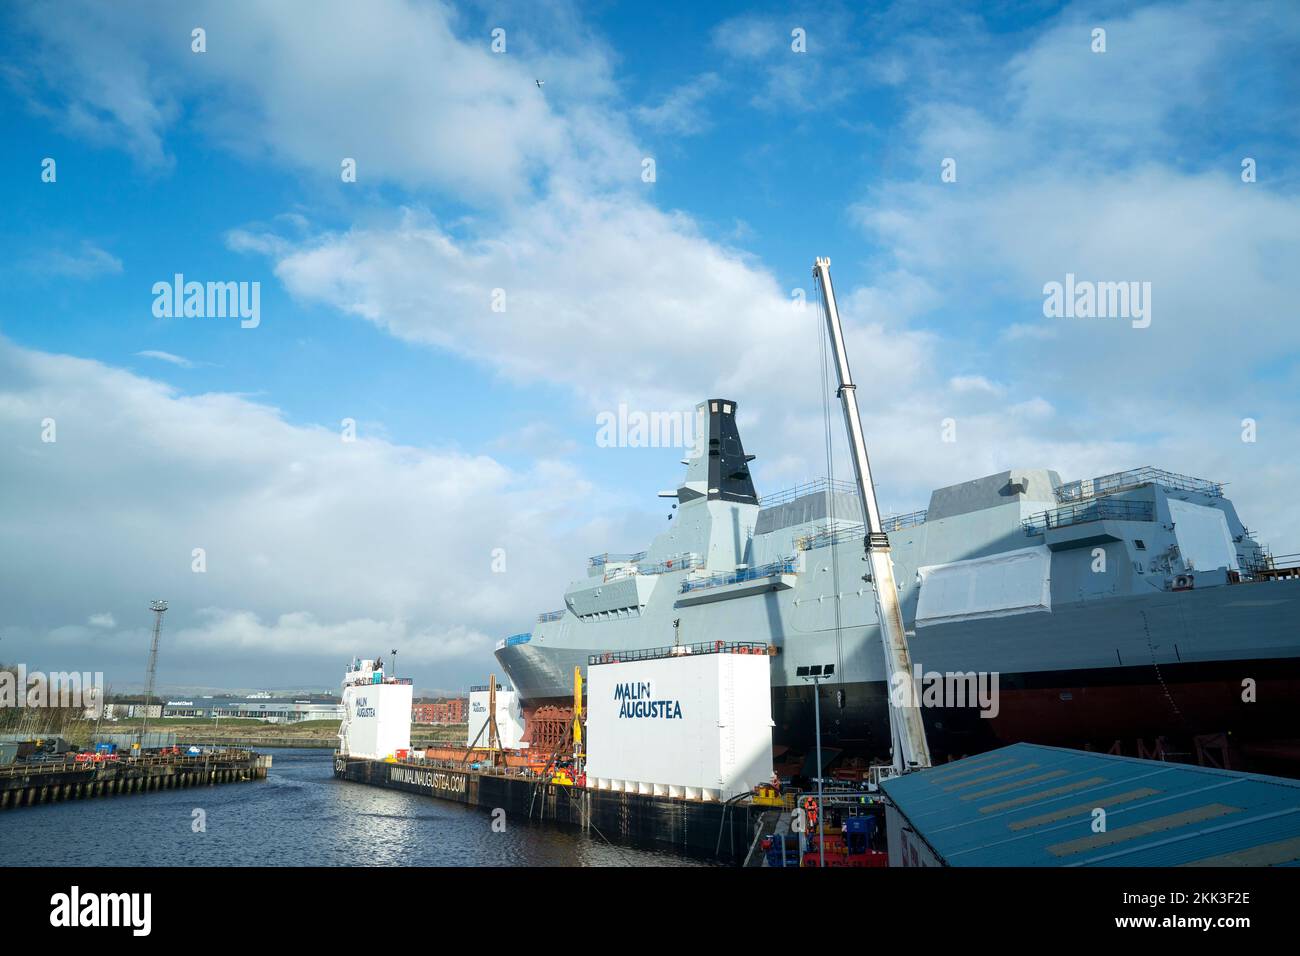 HMS Glasgow wird auf einem Kahn auf der BAE Govan Werft in Glasgow manövriert, bevor sie zur nahe gelegenen Scotstoun Werft am Fluss Clyde gebracht wird. HMS Glasgow ist die erste Fregatte des Typs 26, die auf der Clyde gebaut wurde. Foto: Freitag, 25. November 2022. Stockfoto